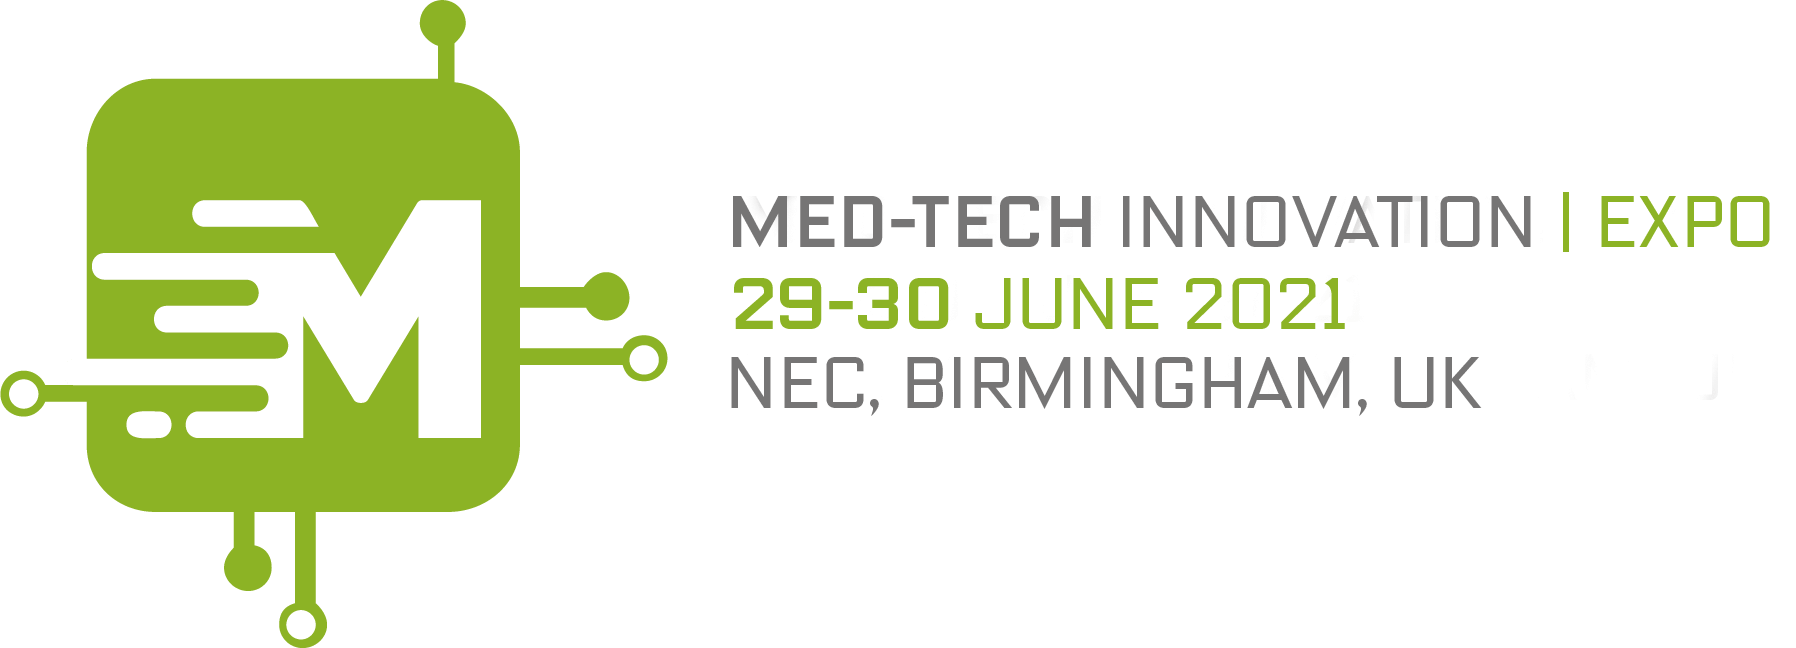 MedTech Innovation Expo MediWales